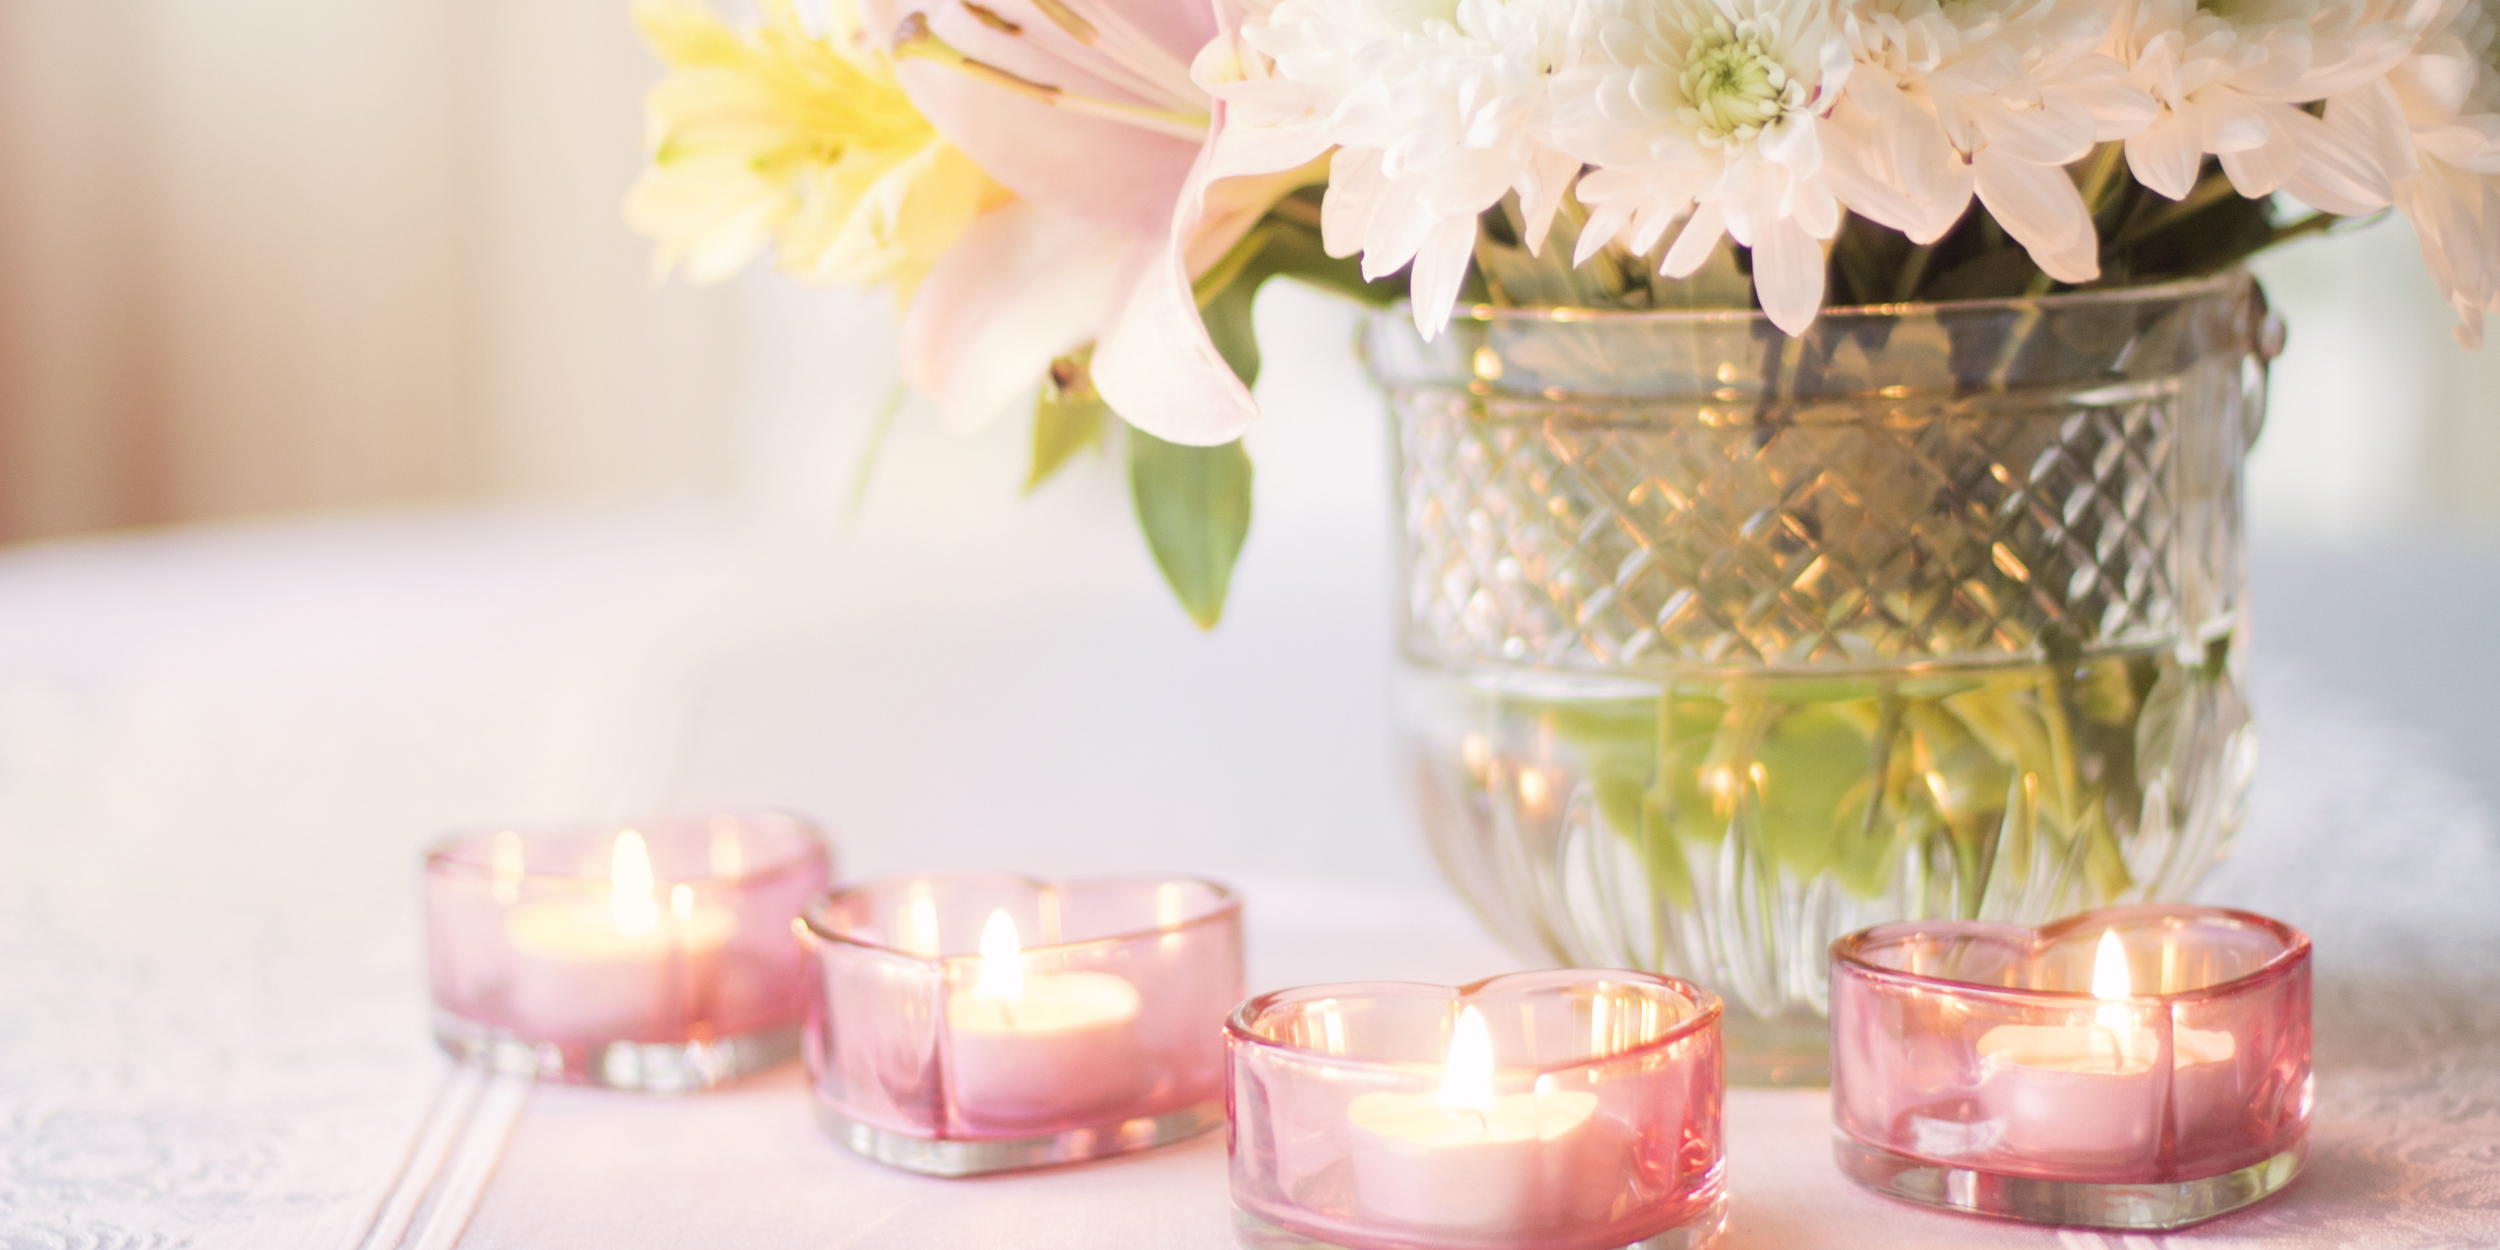 Détails de la table de fleurs et de bougies pour la fête des mères